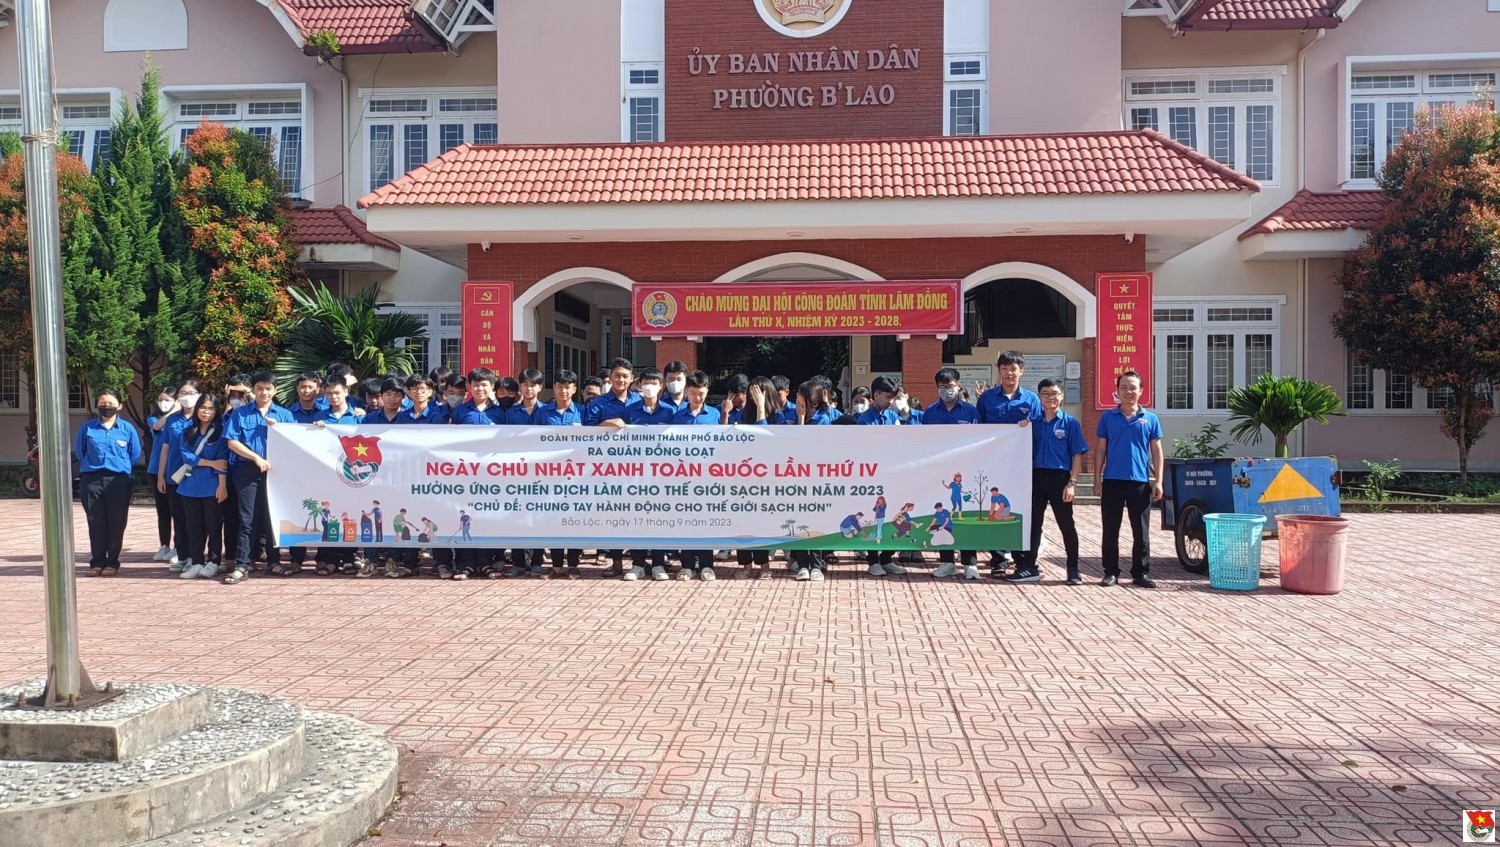 Thanh niên Bảo Lộc với phong trào chống rác thải nhựa!